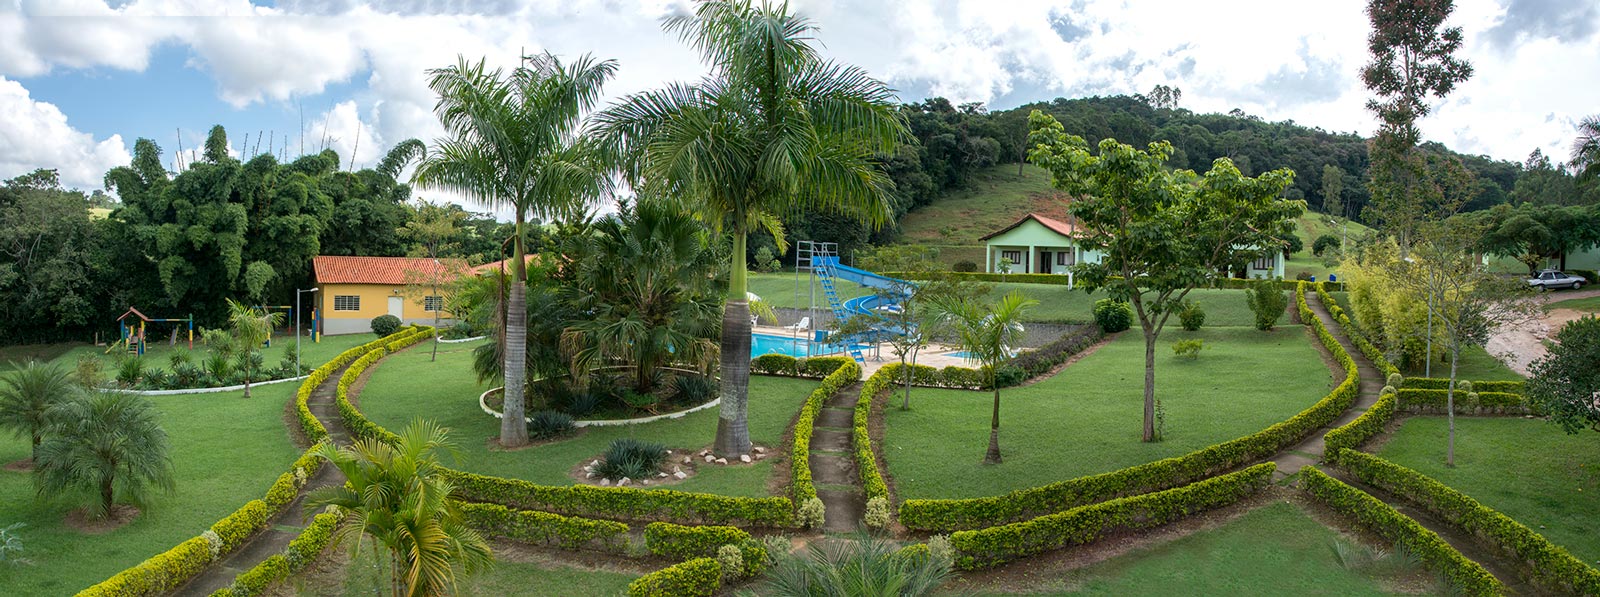 Anote 5 hotéis fazenda em Minas Gerais pra curtir em família